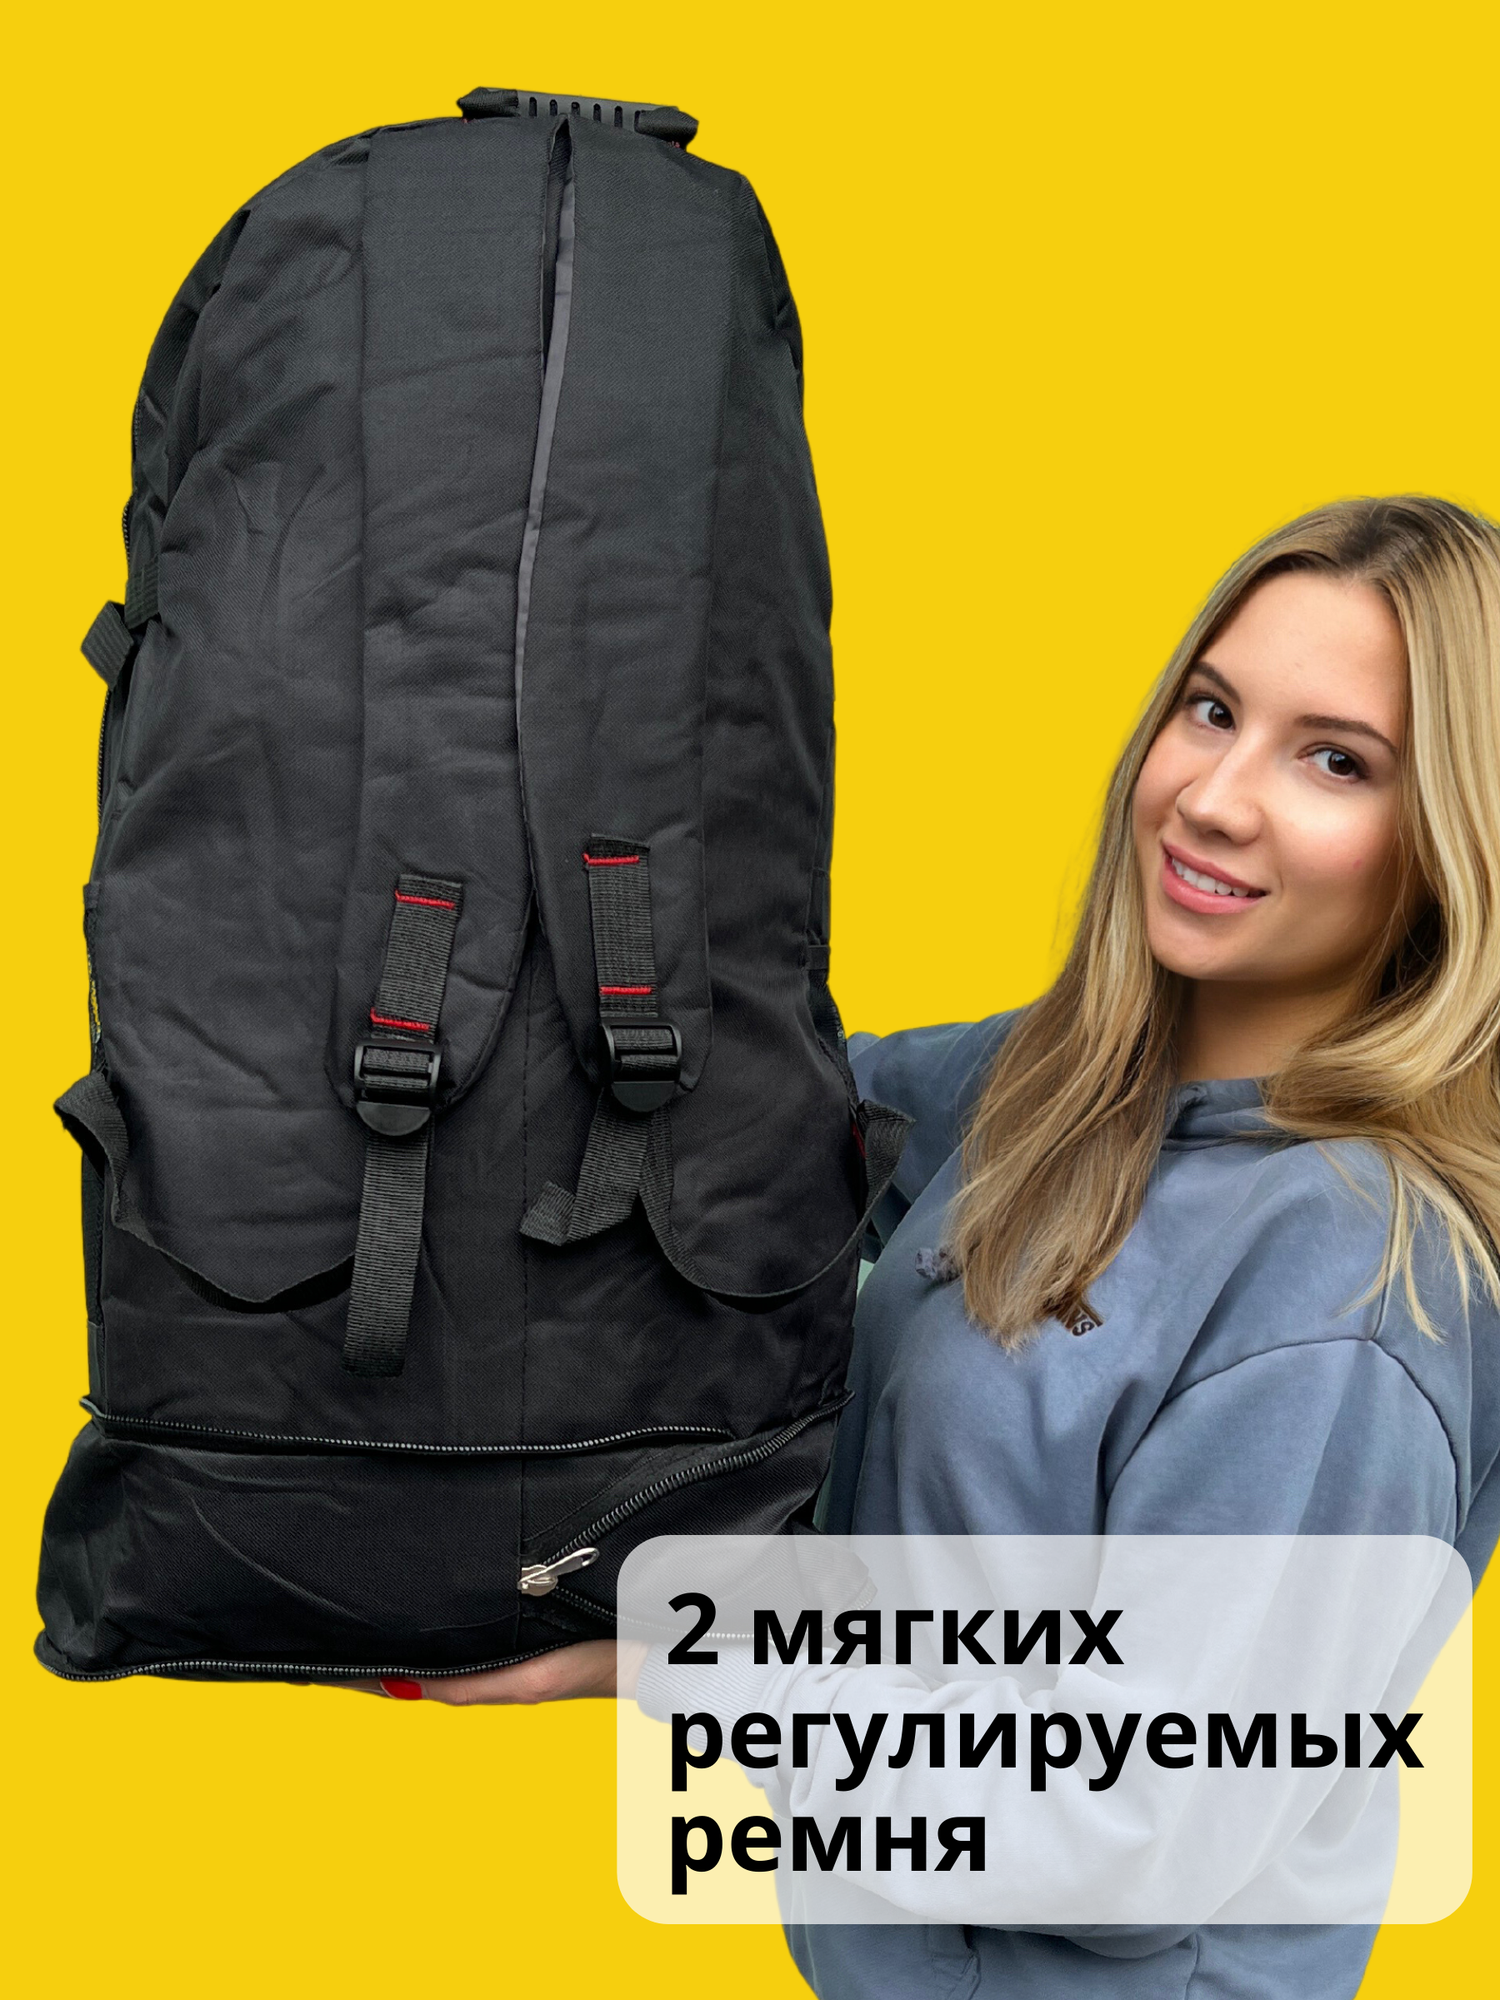 Рюкзак туристический 70 л, черный, рюкзак мужской женский Походный, спортивный, баул, для охоты, рыбалки, туризма